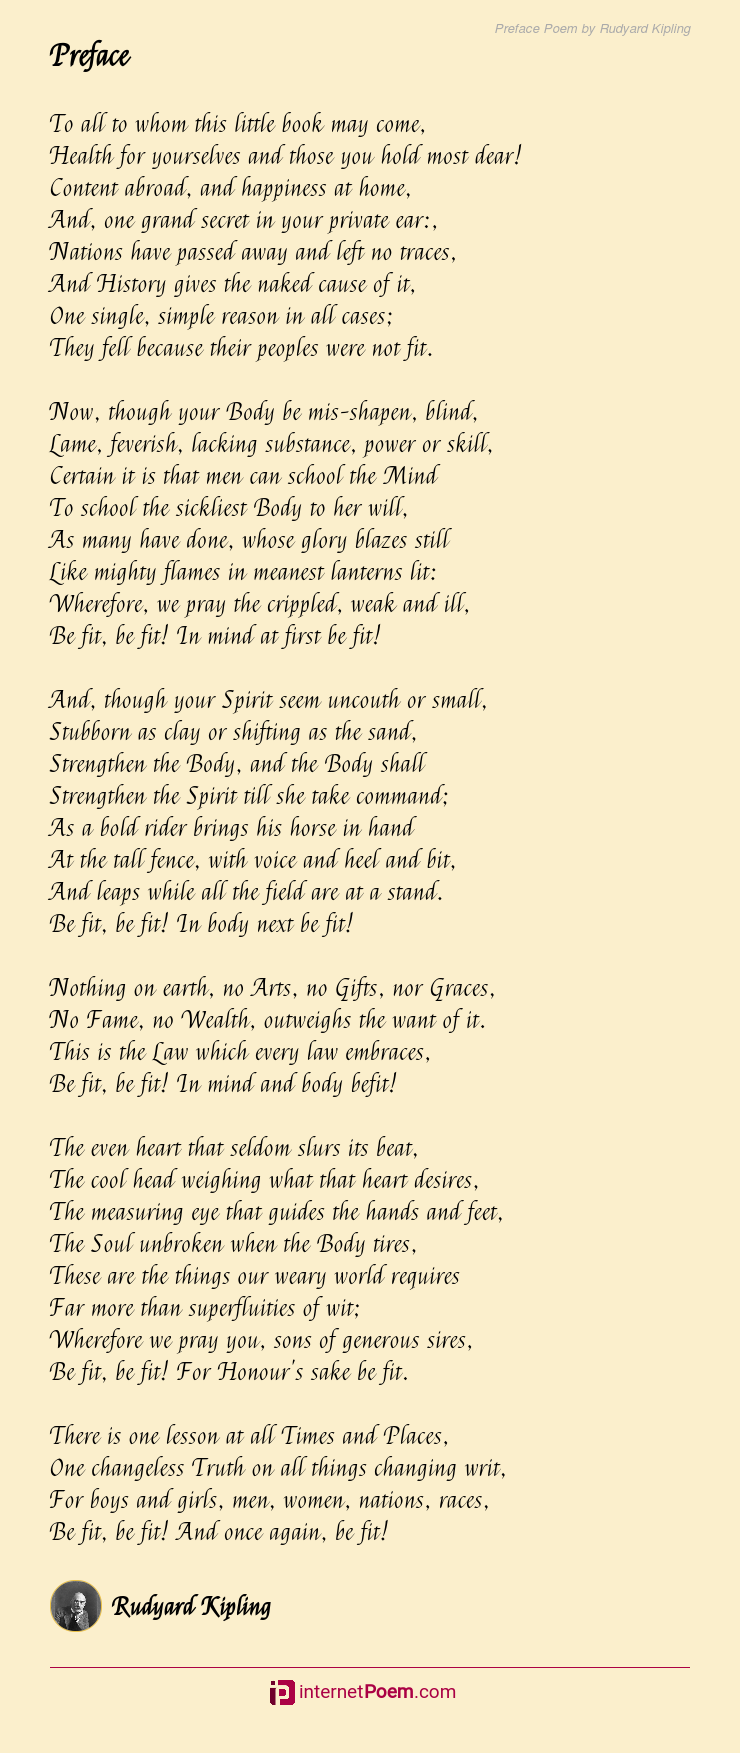 Preface Poem by Rudyard Kipling